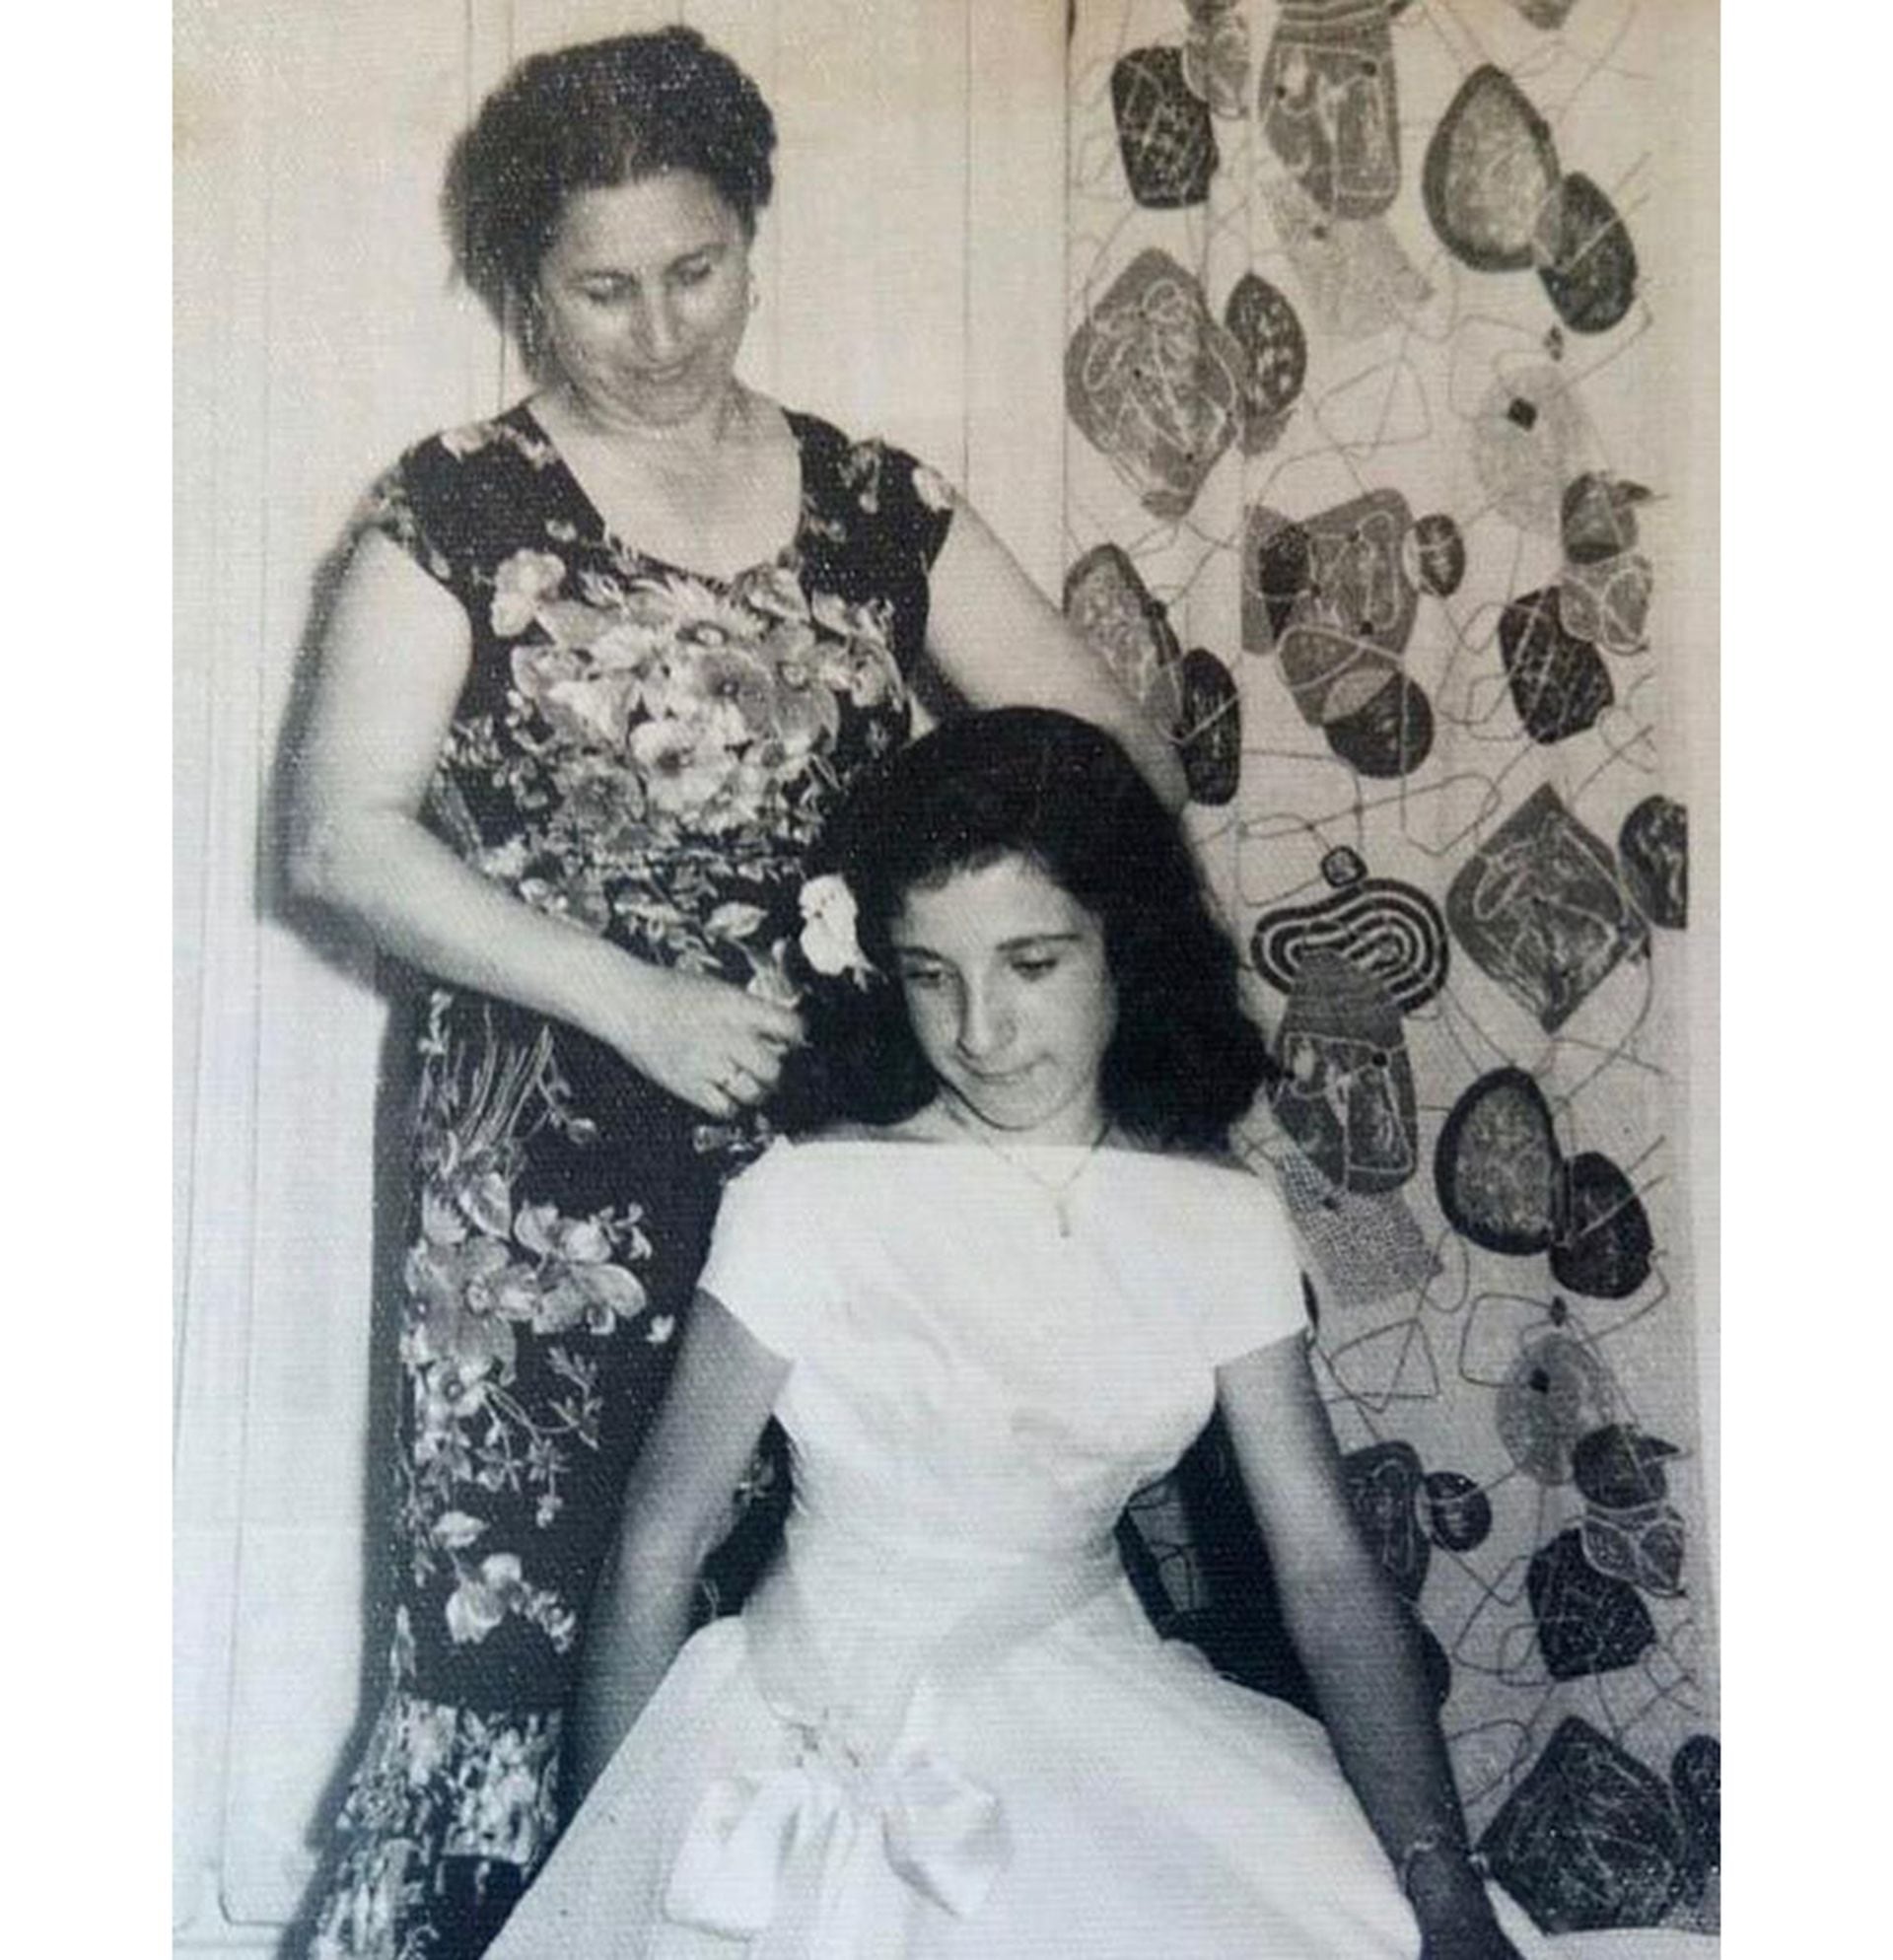 María López, abuela de Araceli González. Fue modista y coció hasta sus 101 años, edad a la que falleció